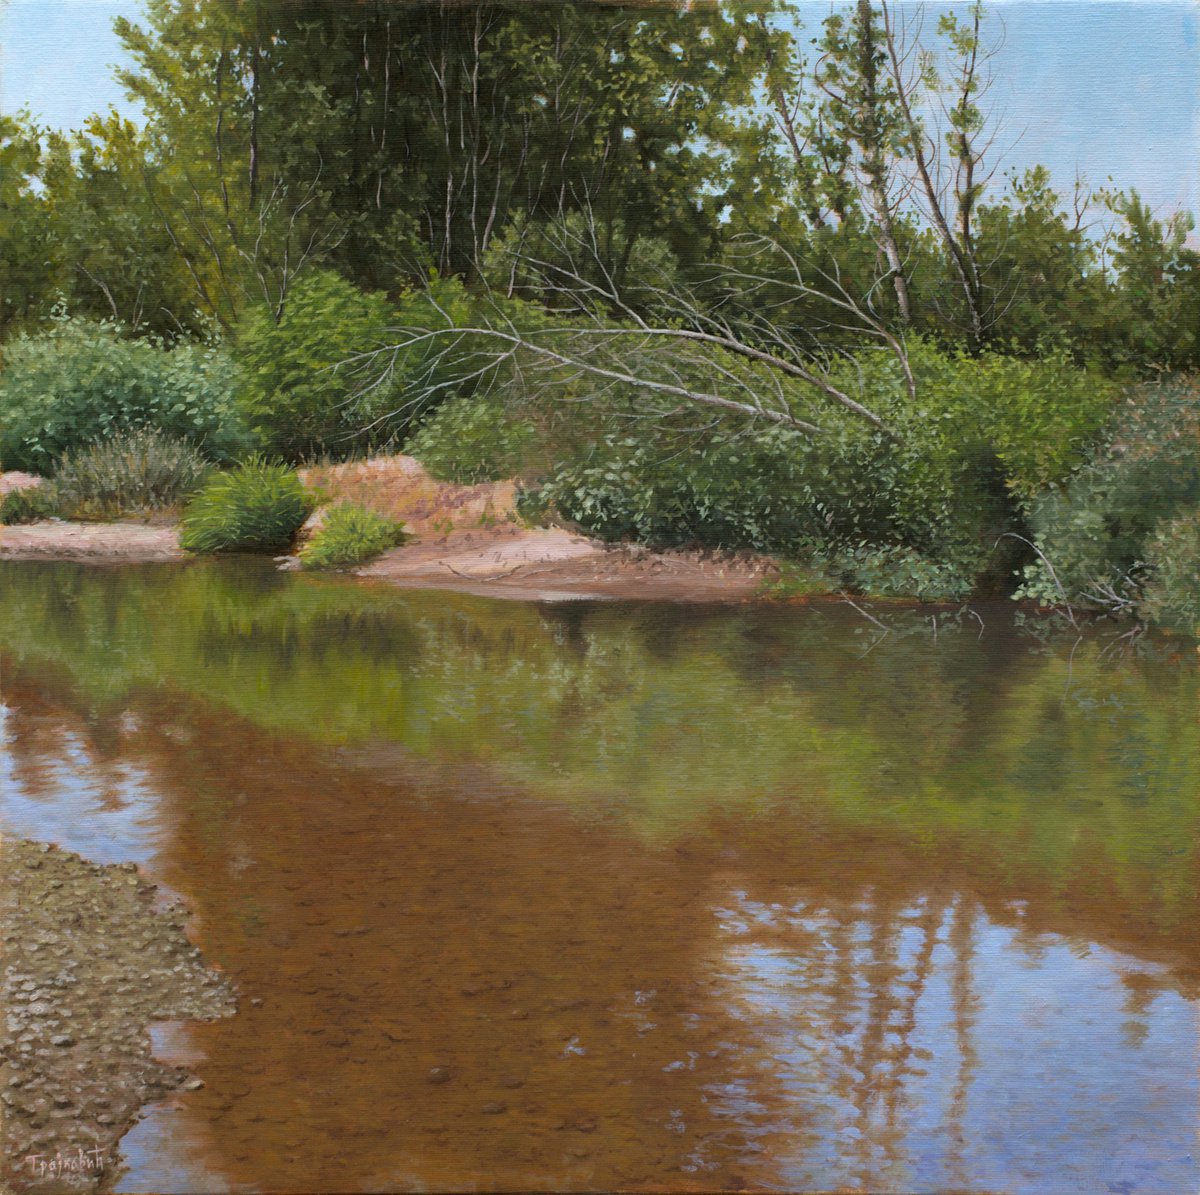 Lost River by Dejan Trajkovic